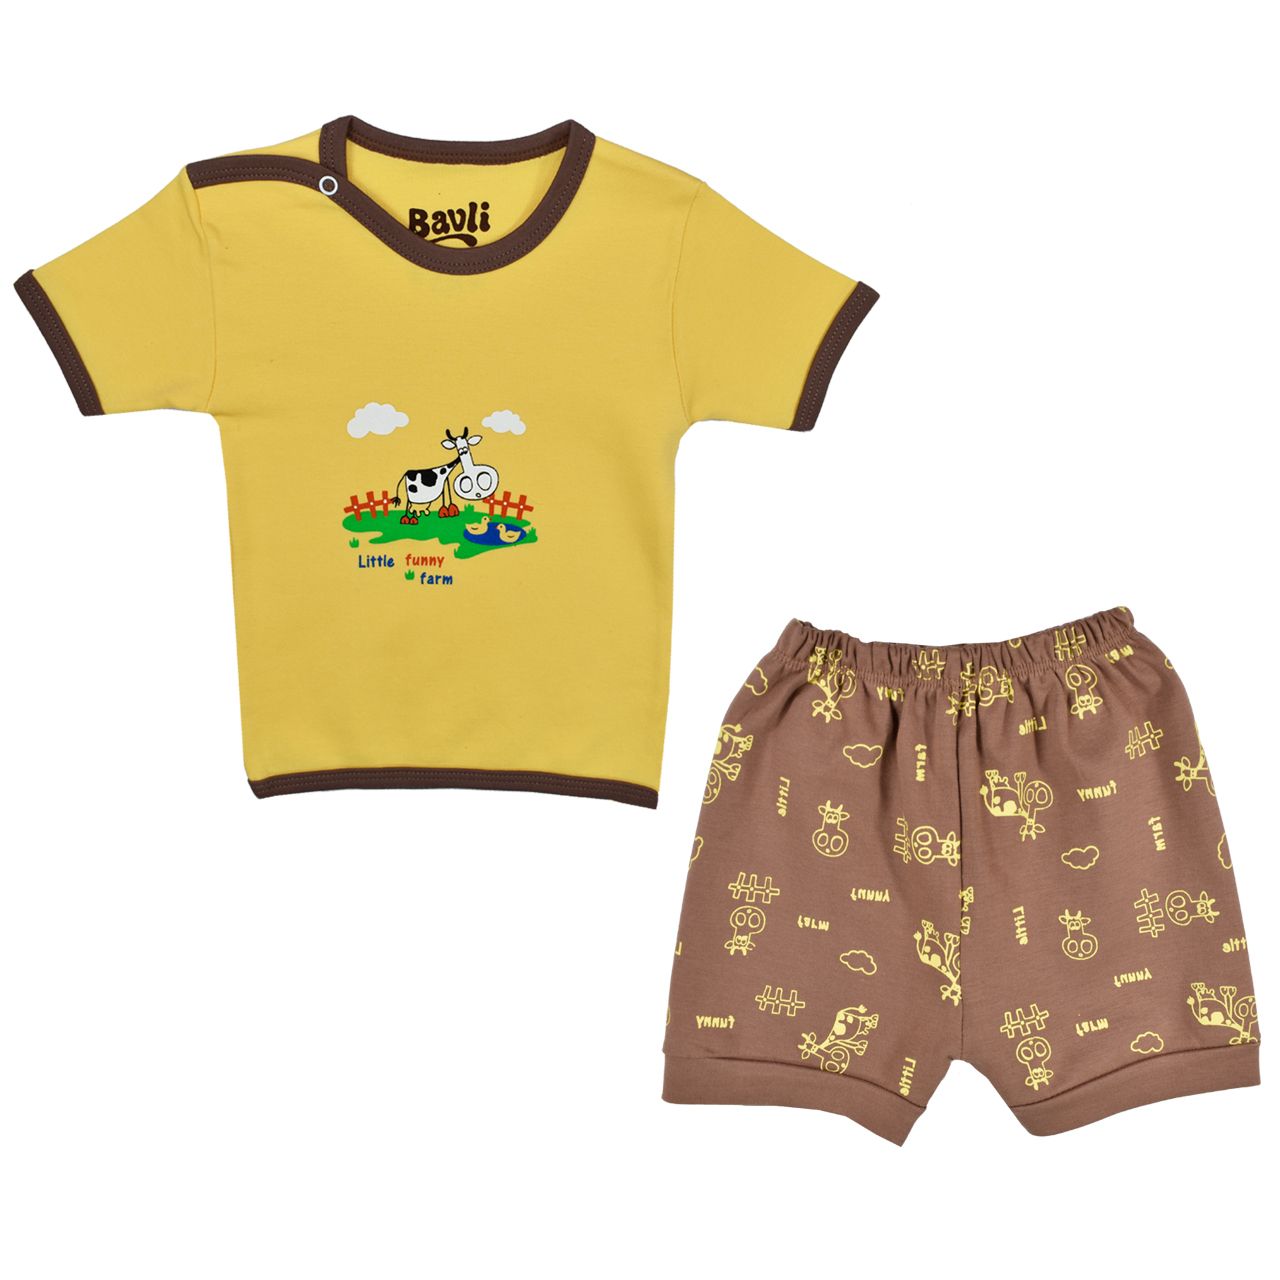 ست تی شرت و شلوارک نوزادی باولی مدل گاو کد 1 -  - 1